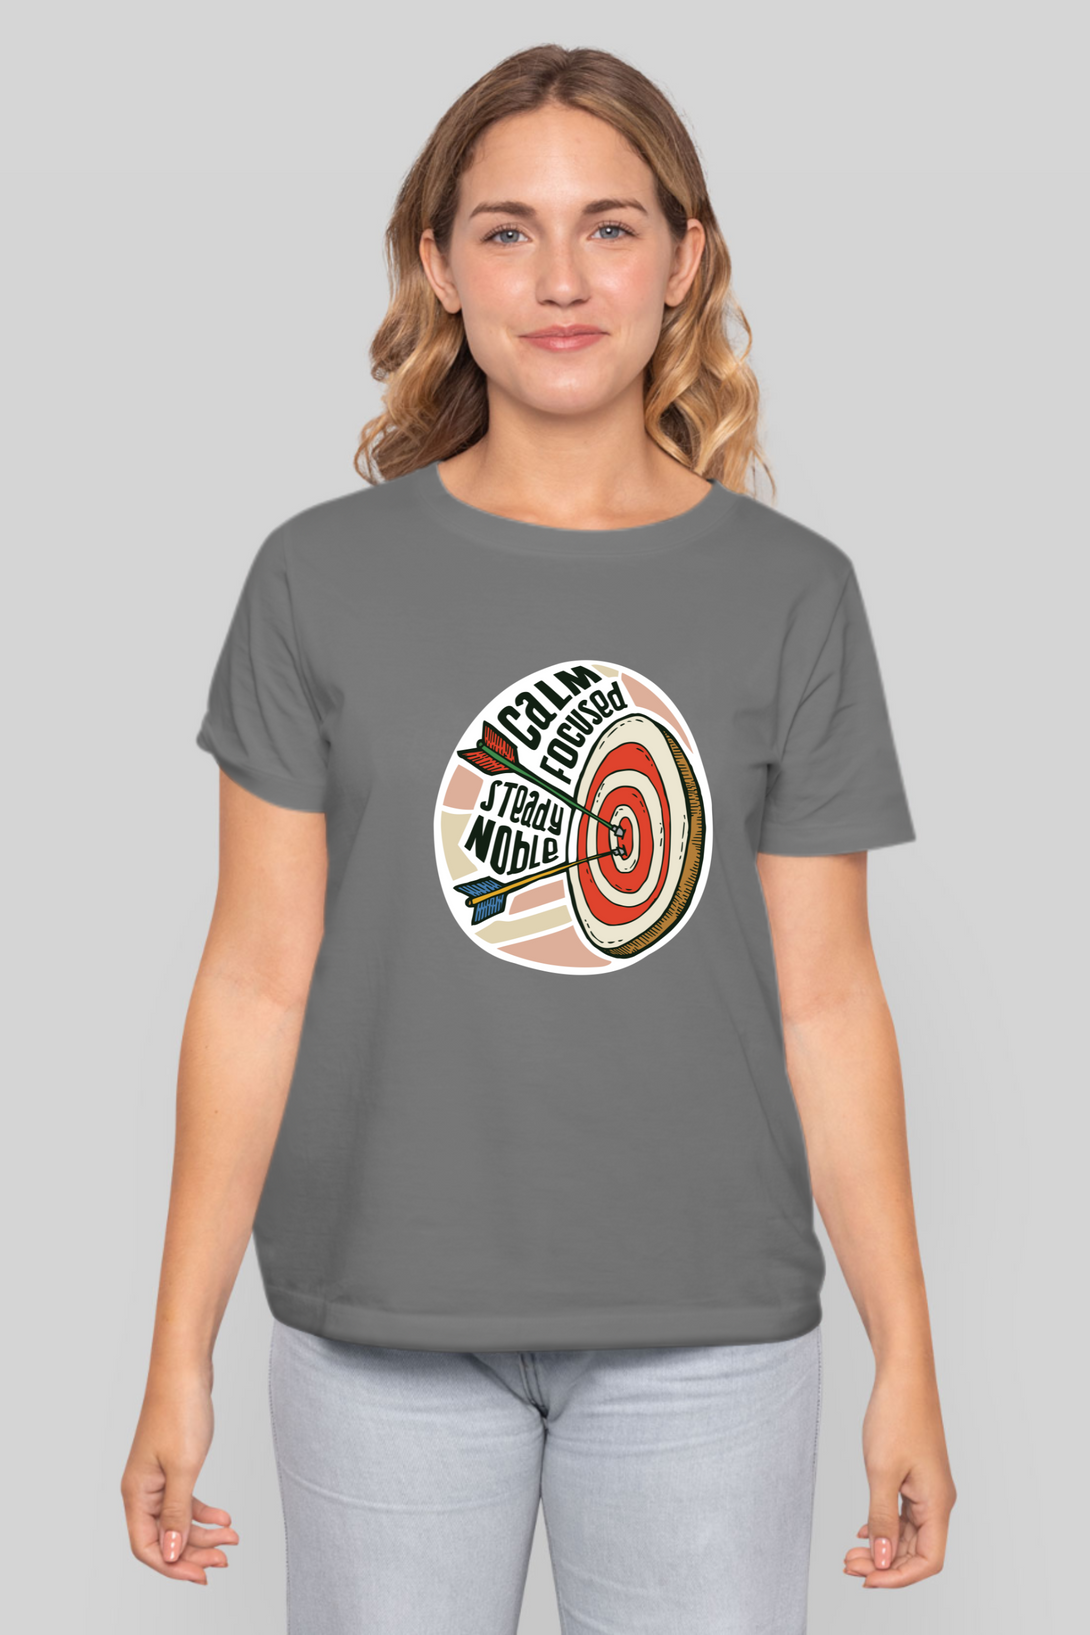 Bullseye Printed T-Shirt For Women - WowWaves - 11